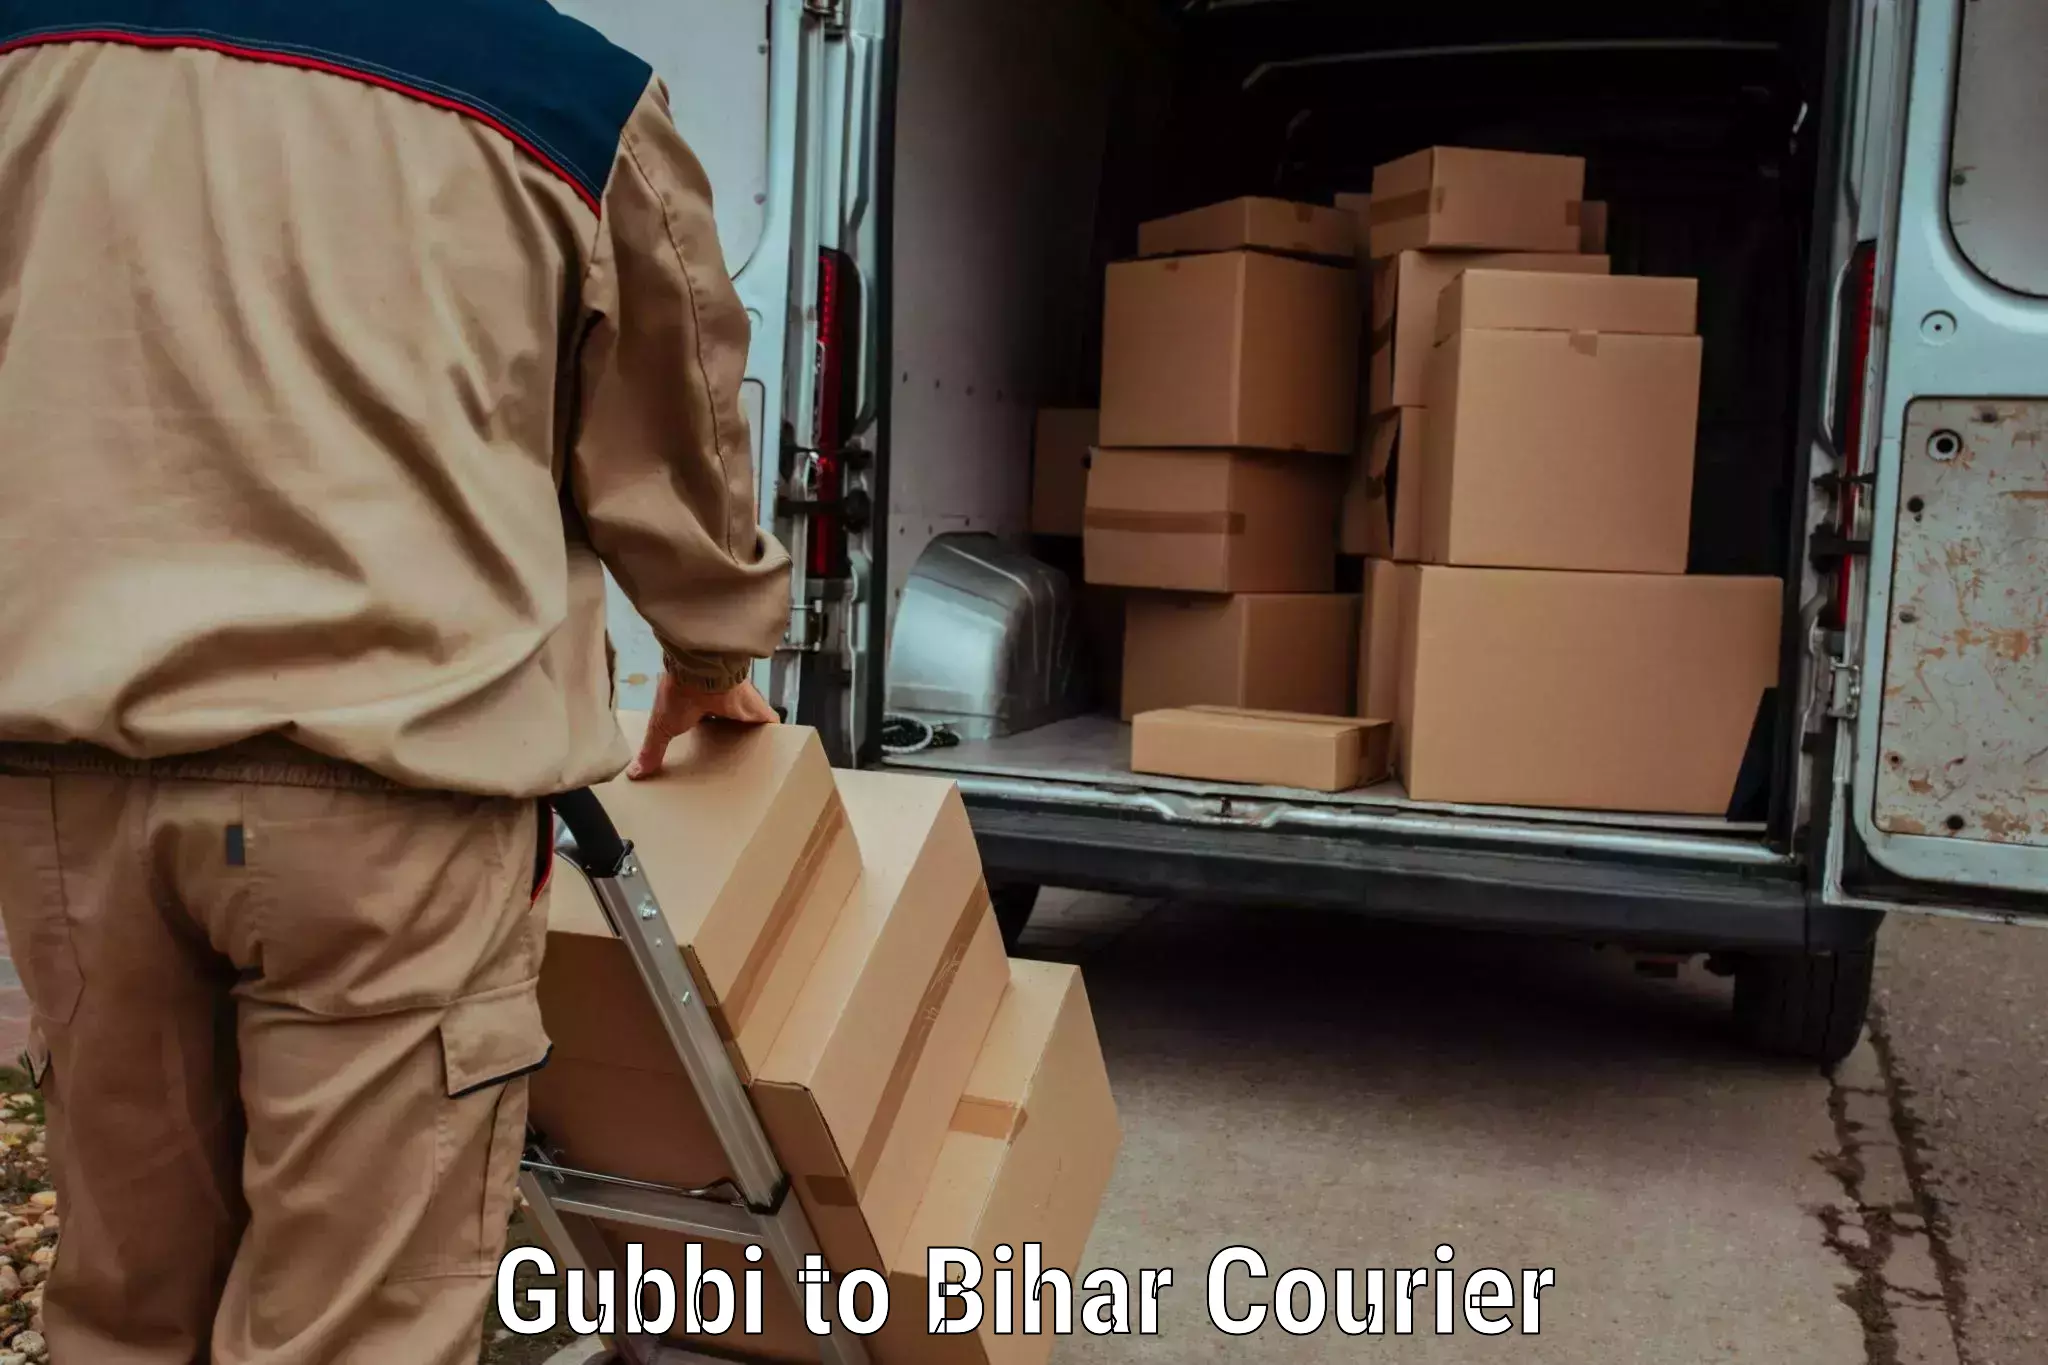 Courier service comparison Gubbi to Aurangabad Bihar